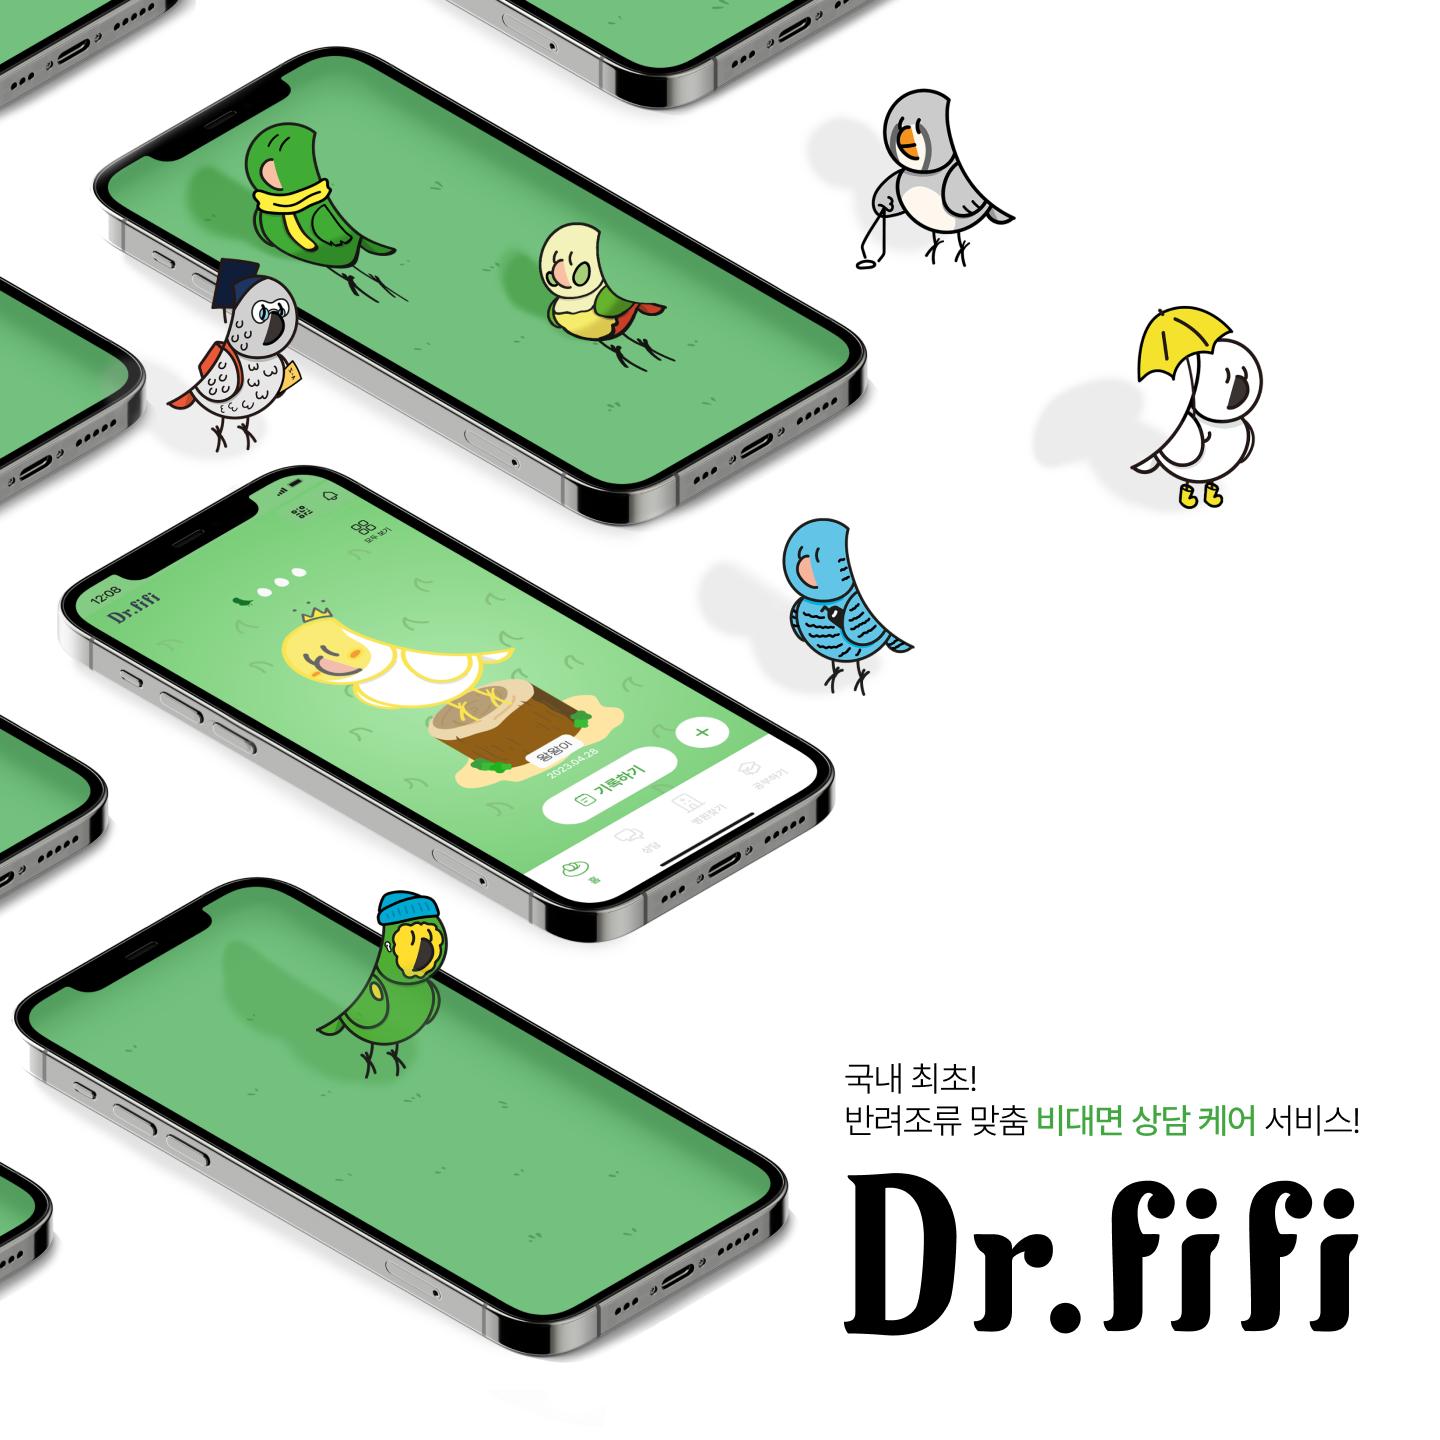 Dr.fifi